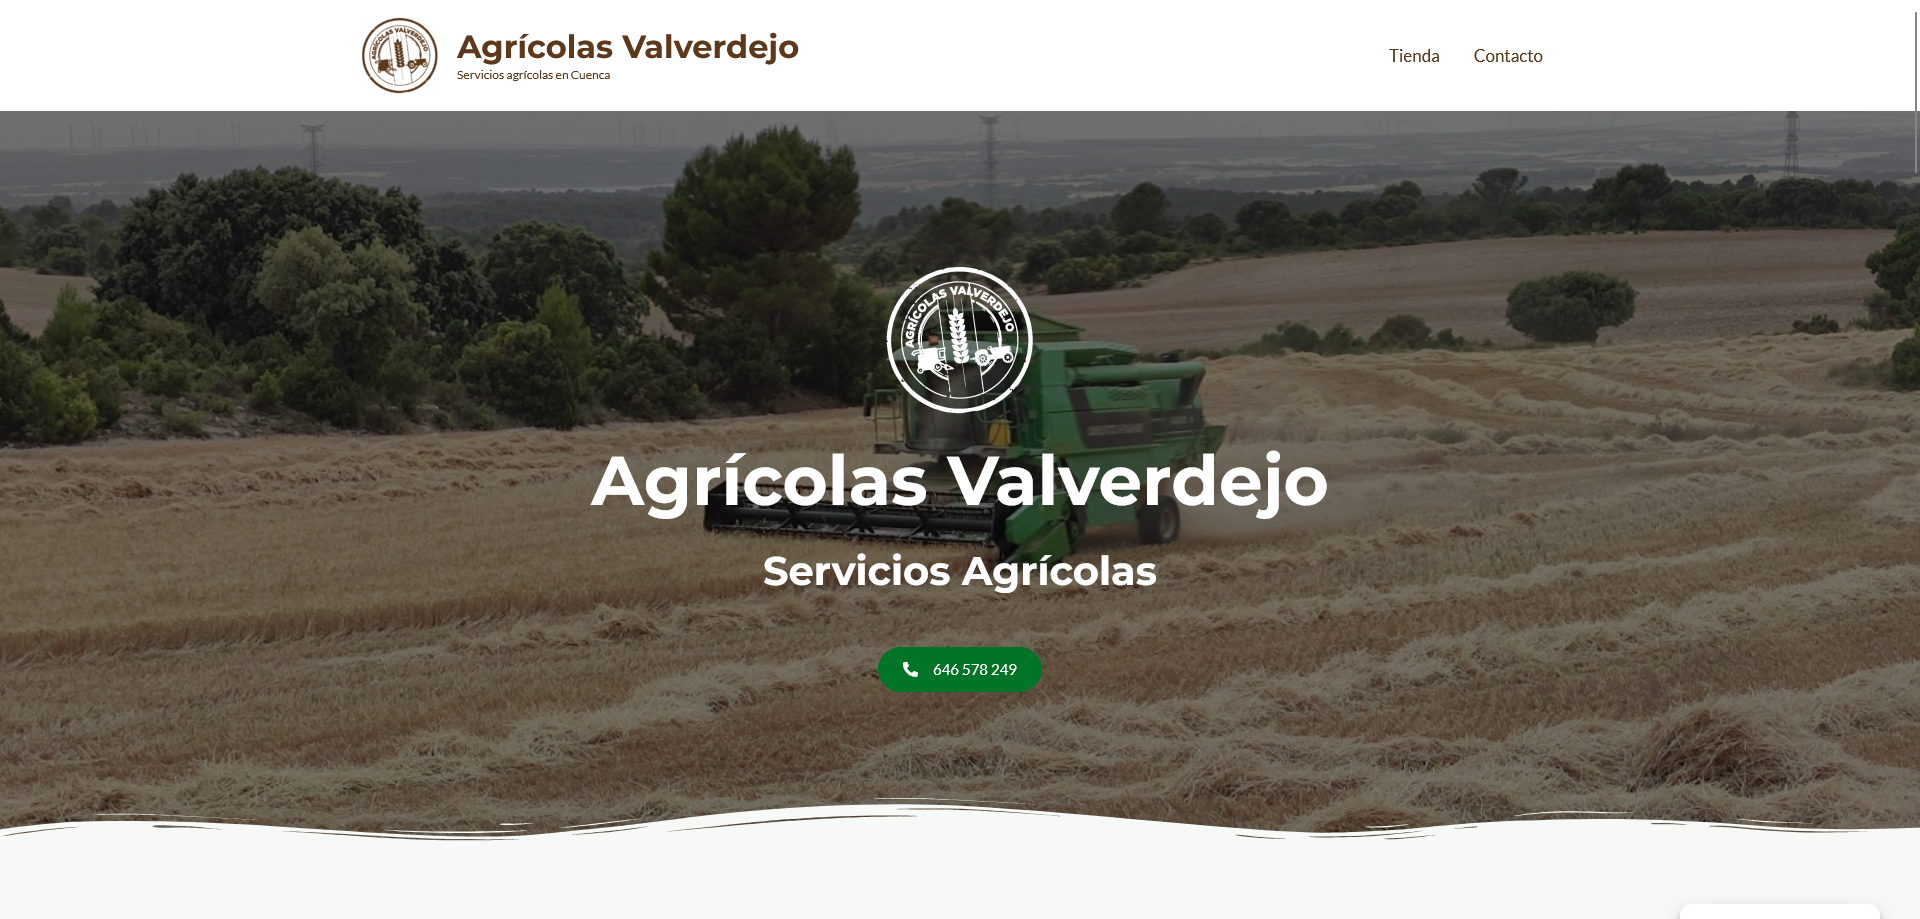 Ver detalles de la Empresa Agrícolas Valverdejo